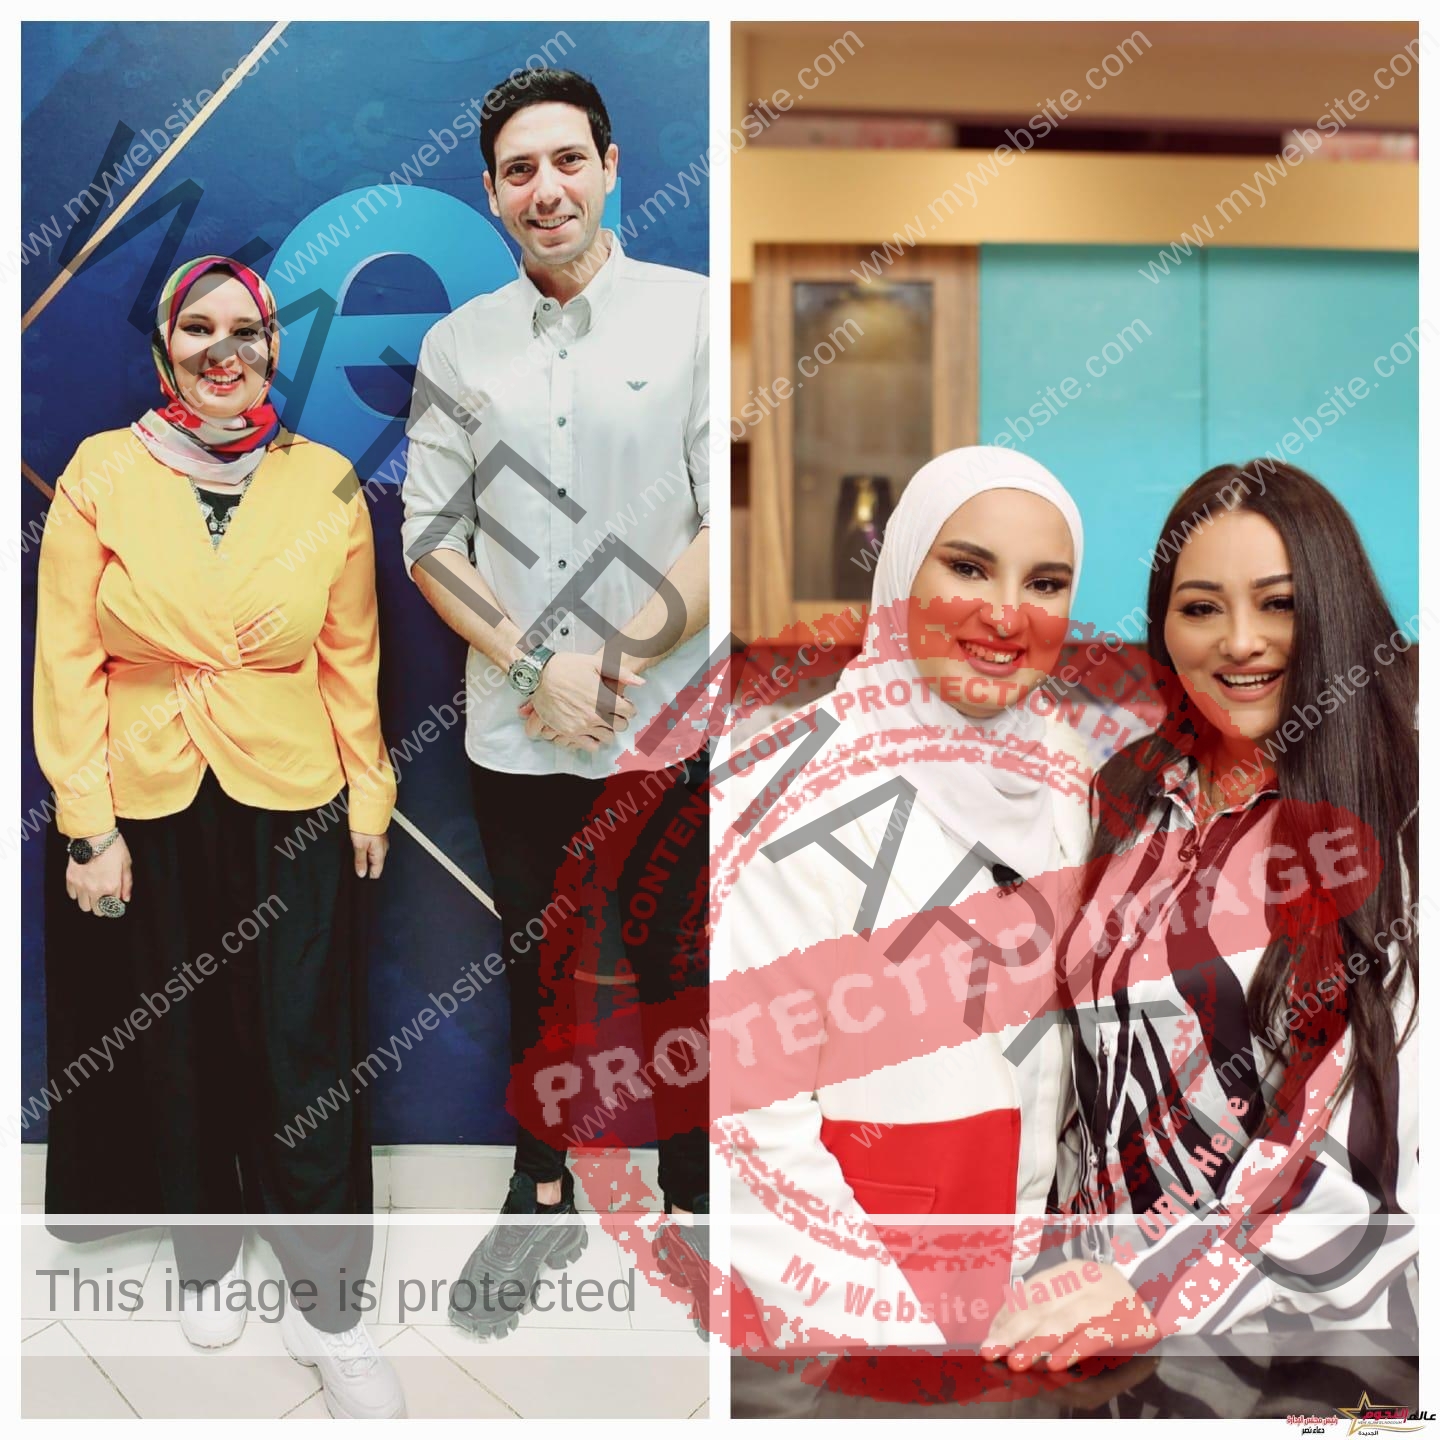 أحمد جمال سعيد وراندا البحيري يهنئان يارا أحمد على برنامجها الجديد "فري تايم"